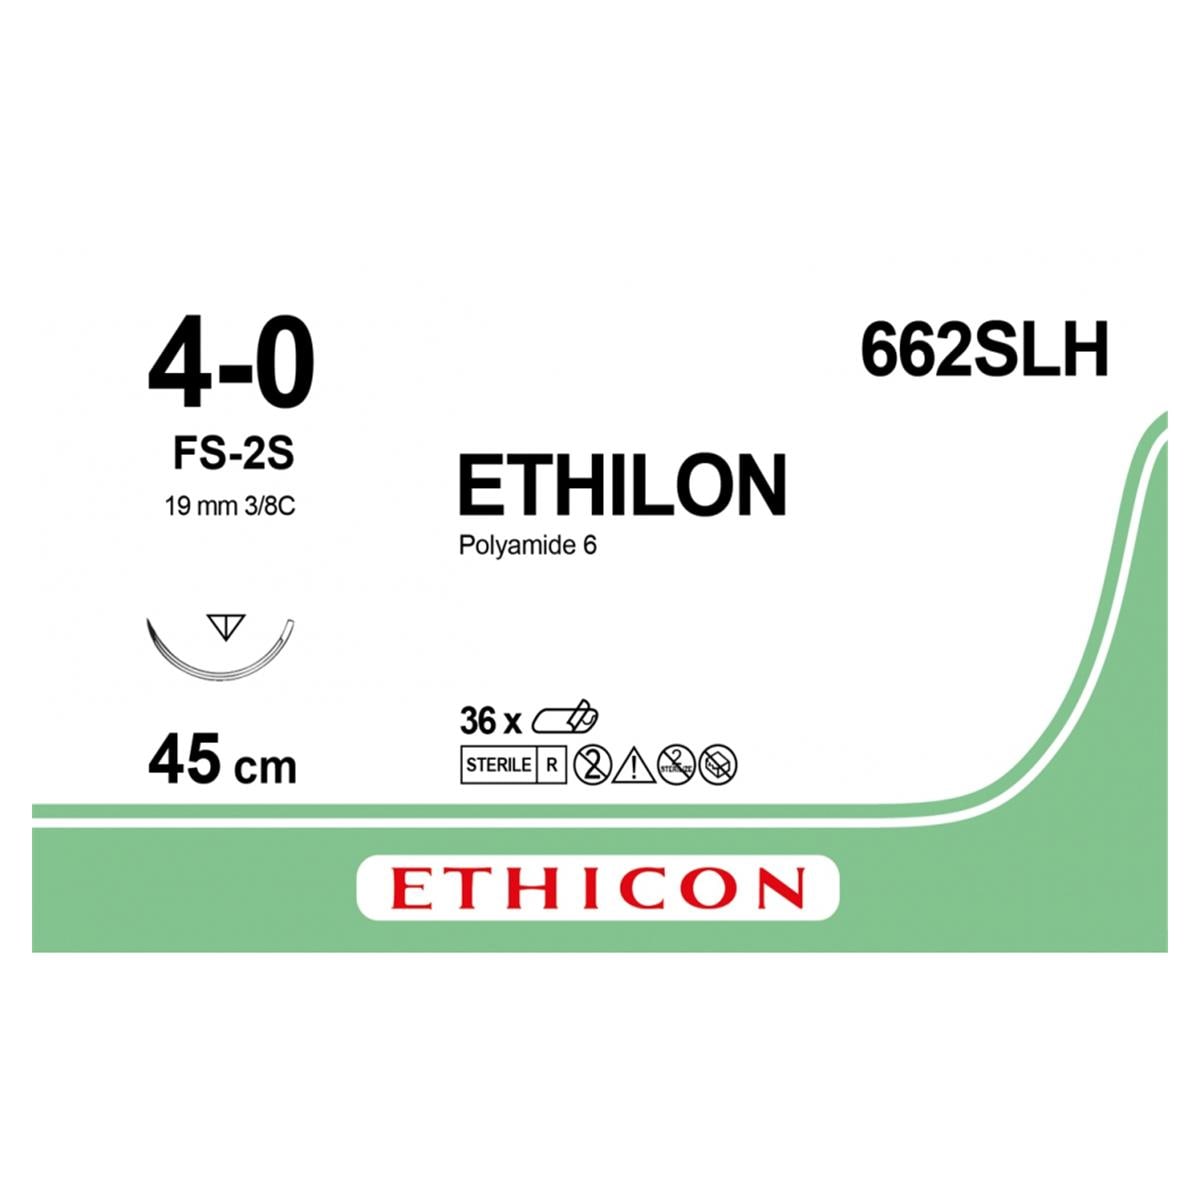 Ethilon - Lengte 45cm zwart, 36 stuks 4-0, naald FS-2S - 662SLH